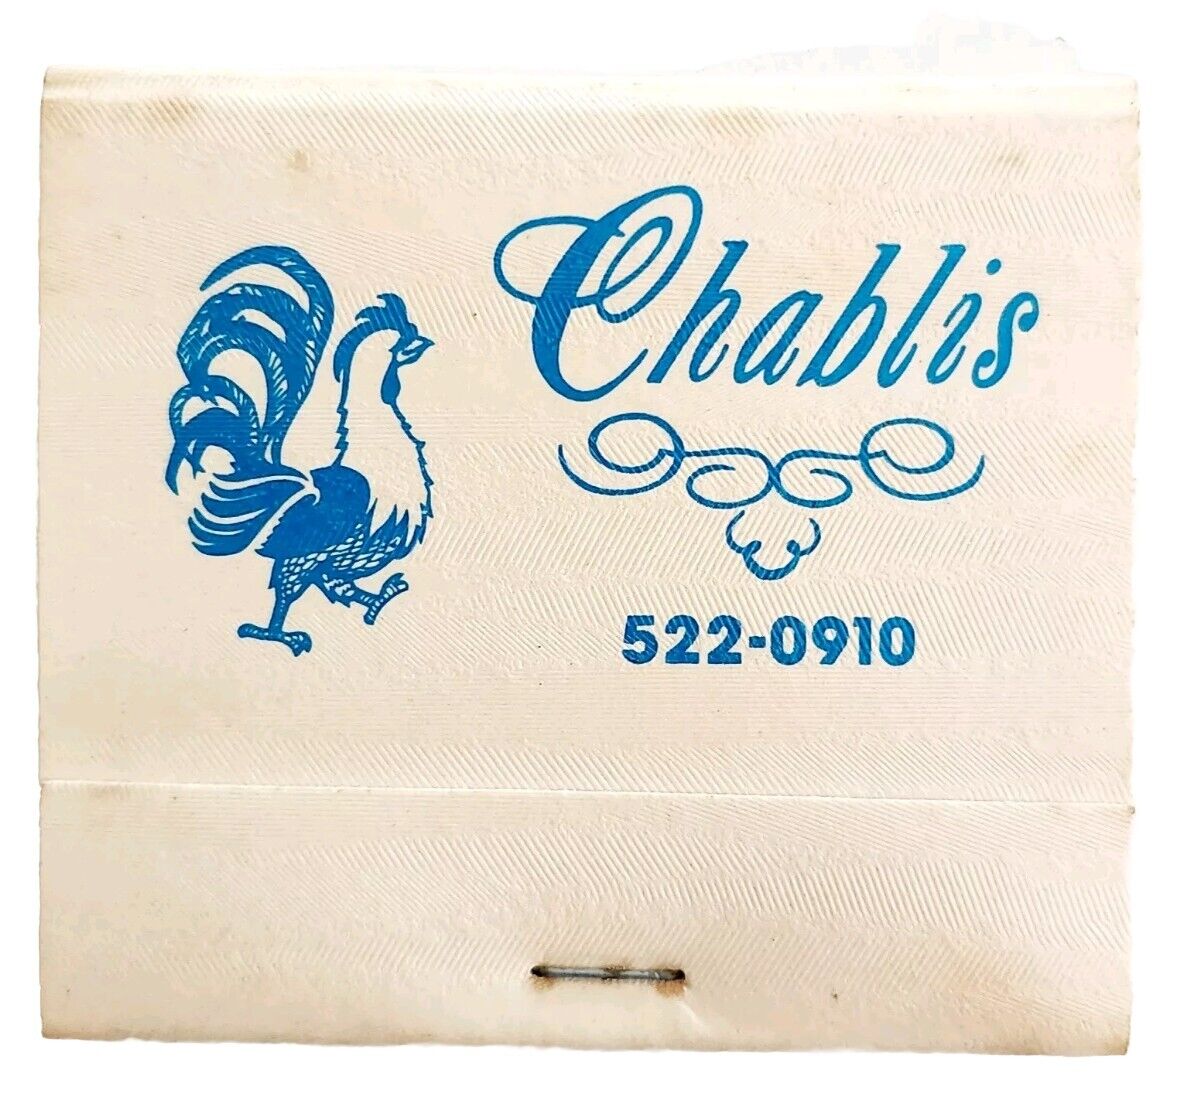 Chablis La Creperie Restaurant Vintage Matchbook Austin Texas Unstruck E77R1